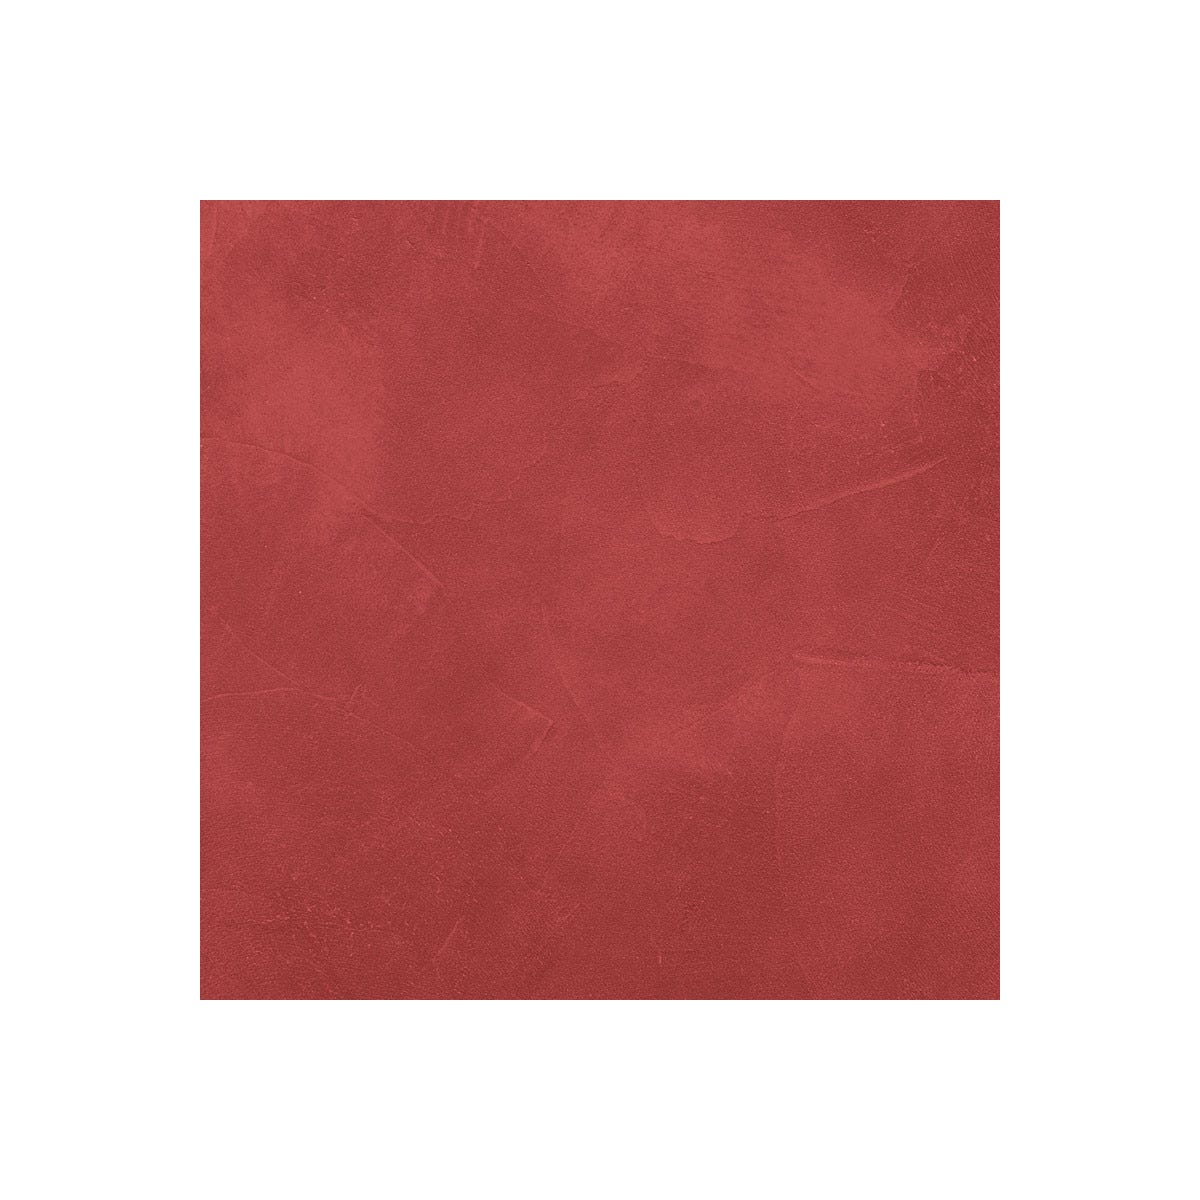 KIT BÉTON CIRÉ - MURS SALLE DE BAINS DOUCHE ITALIENNE Goyave Rouge - 10 m² (en 2 couches)ARCANE INDUSTRIES 1